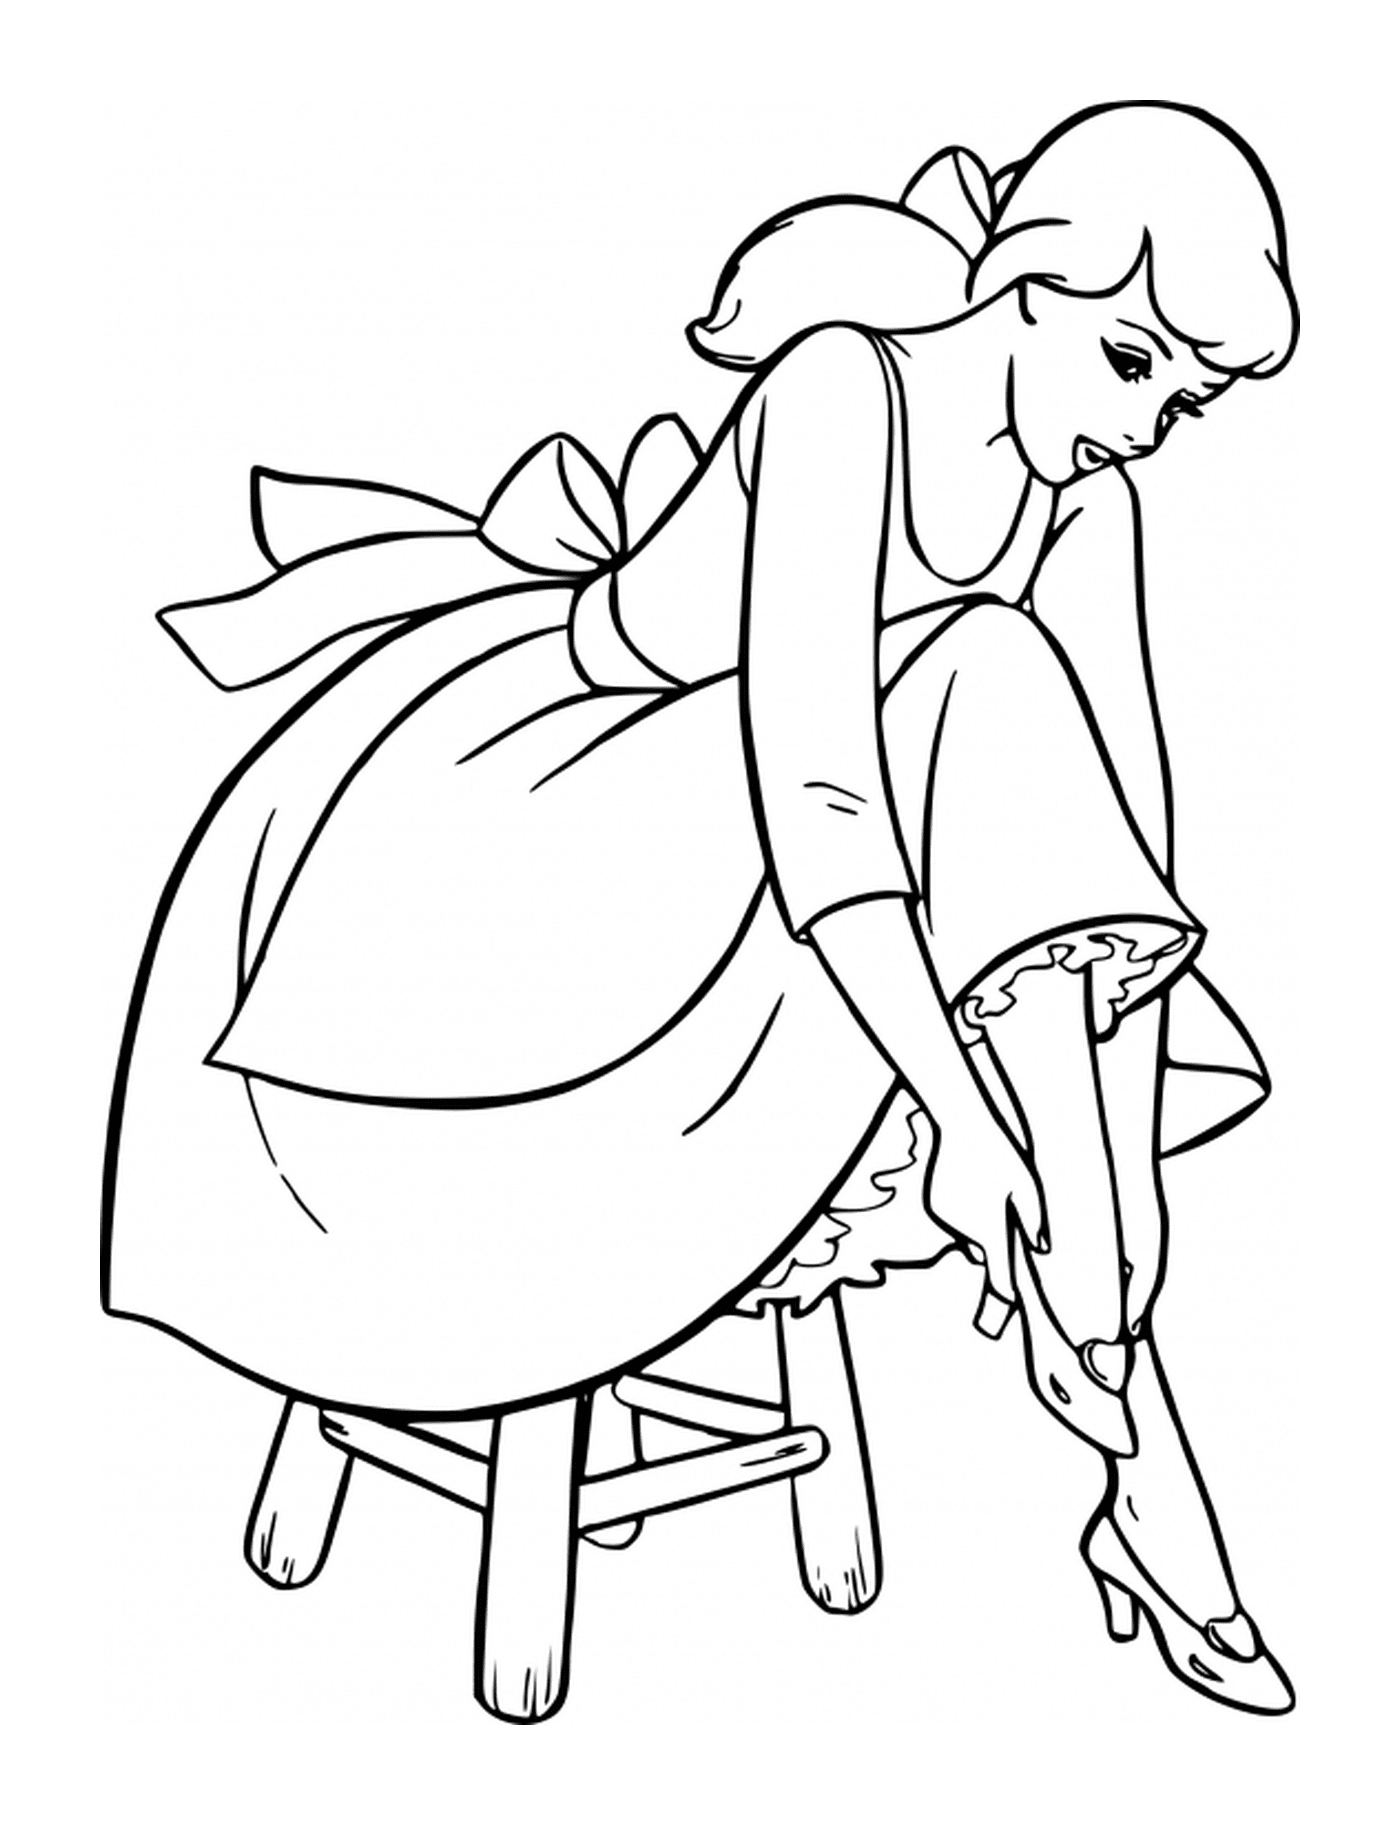  Cenicienta poniendo su zapato en un taburete 